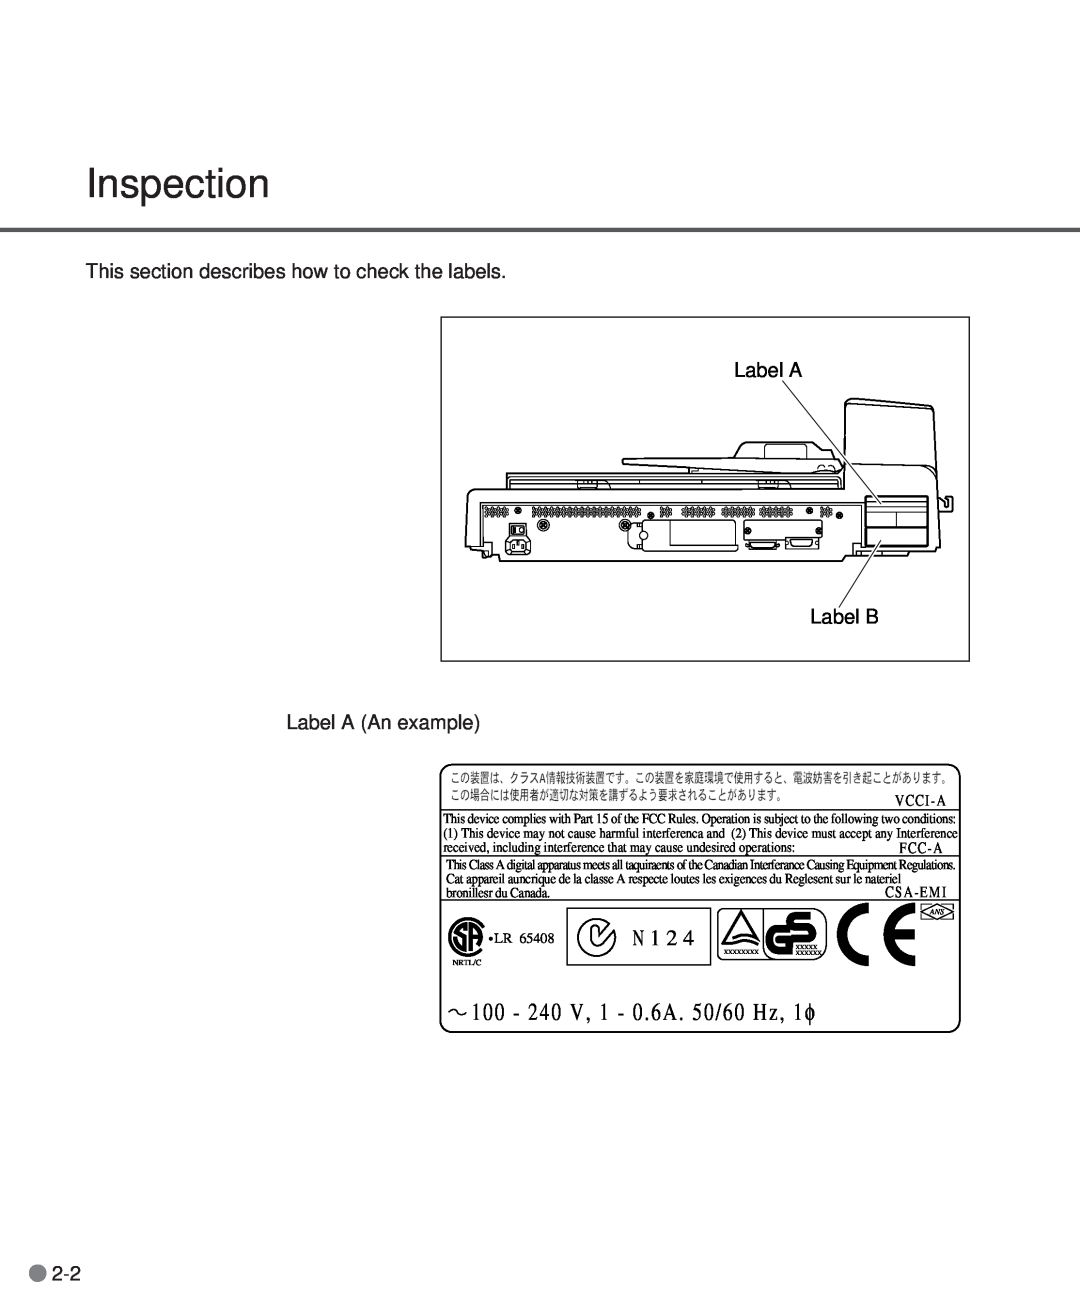 Fujitsu M3097DE, M3097DG manual Inspection, 100 - 240 V, 1 - 0 . 6A . 50/60 Hz, 1 φ, N 1 2, V C C I - A 